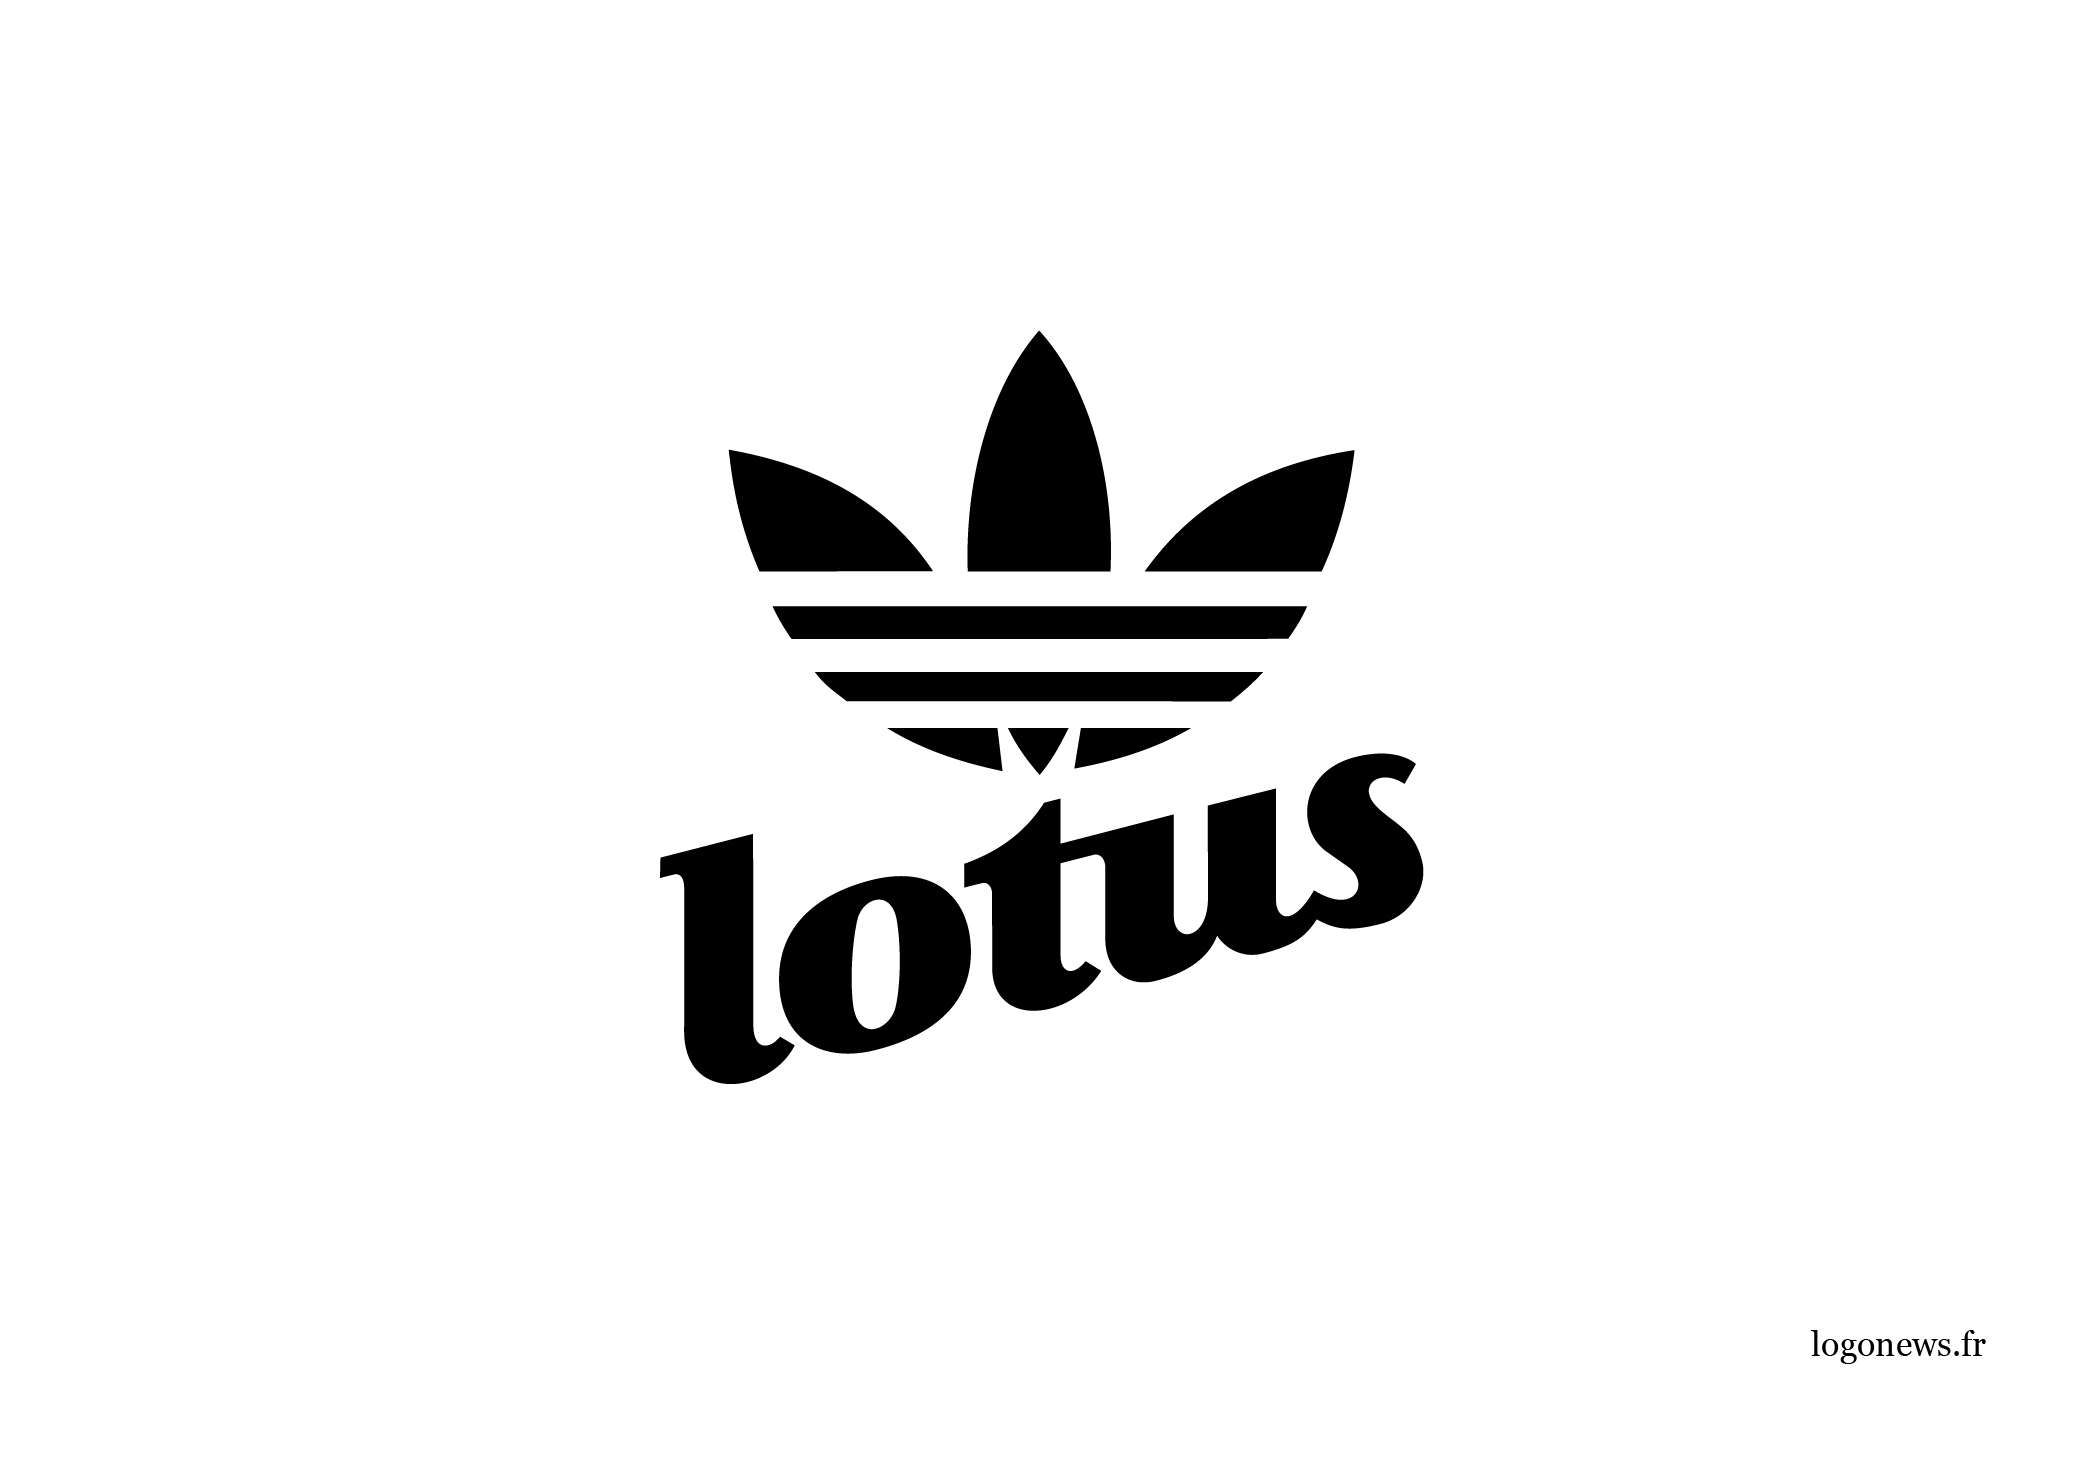 12_logonews_remix_lotus_adidas